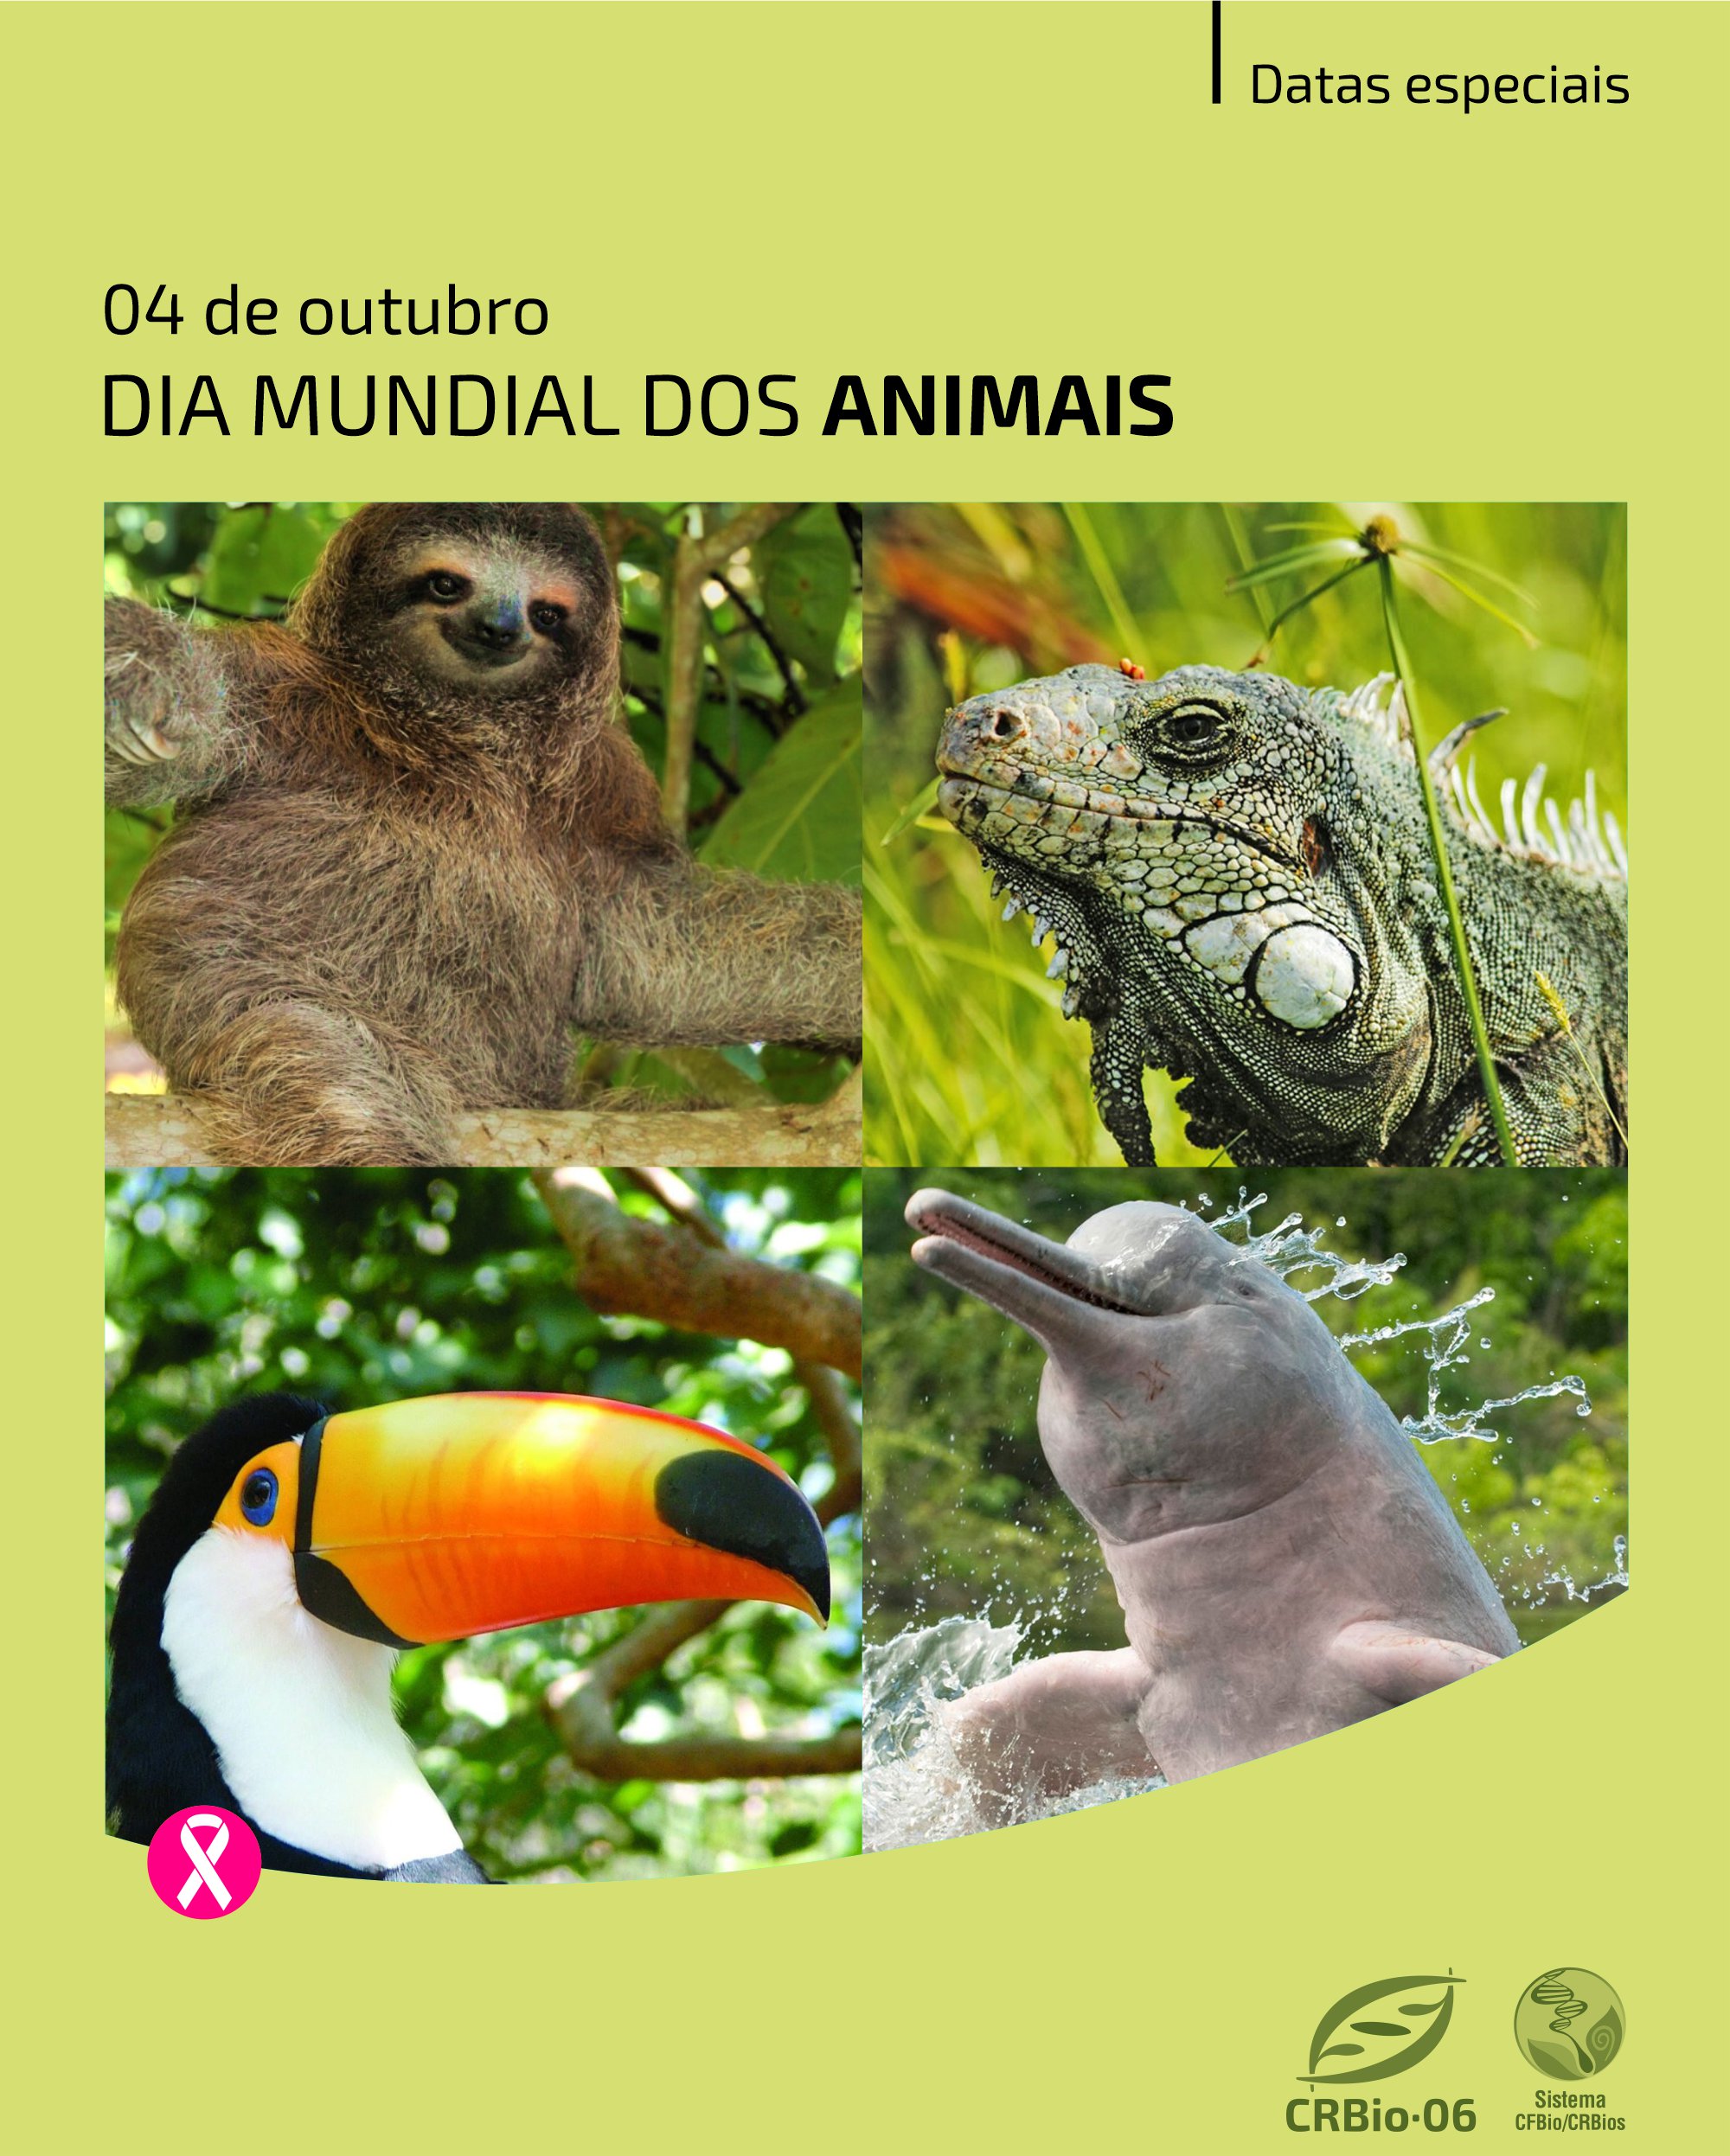 04/10 - Dia Mundial dos Animais - EDUCANDARIO MARTINS - GALO